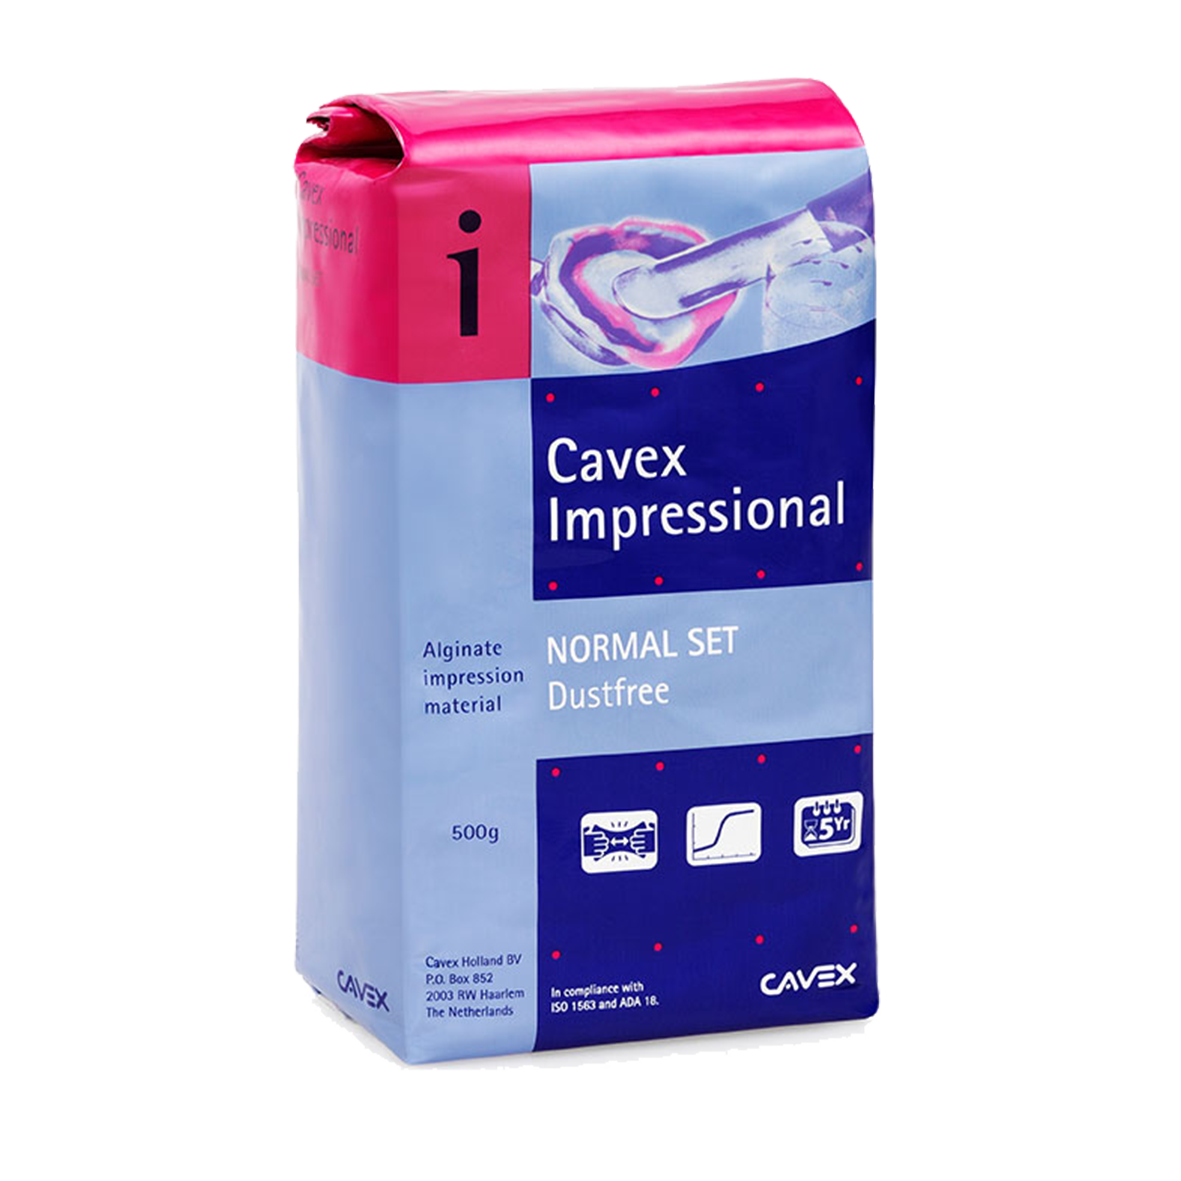 Cavex Impressional